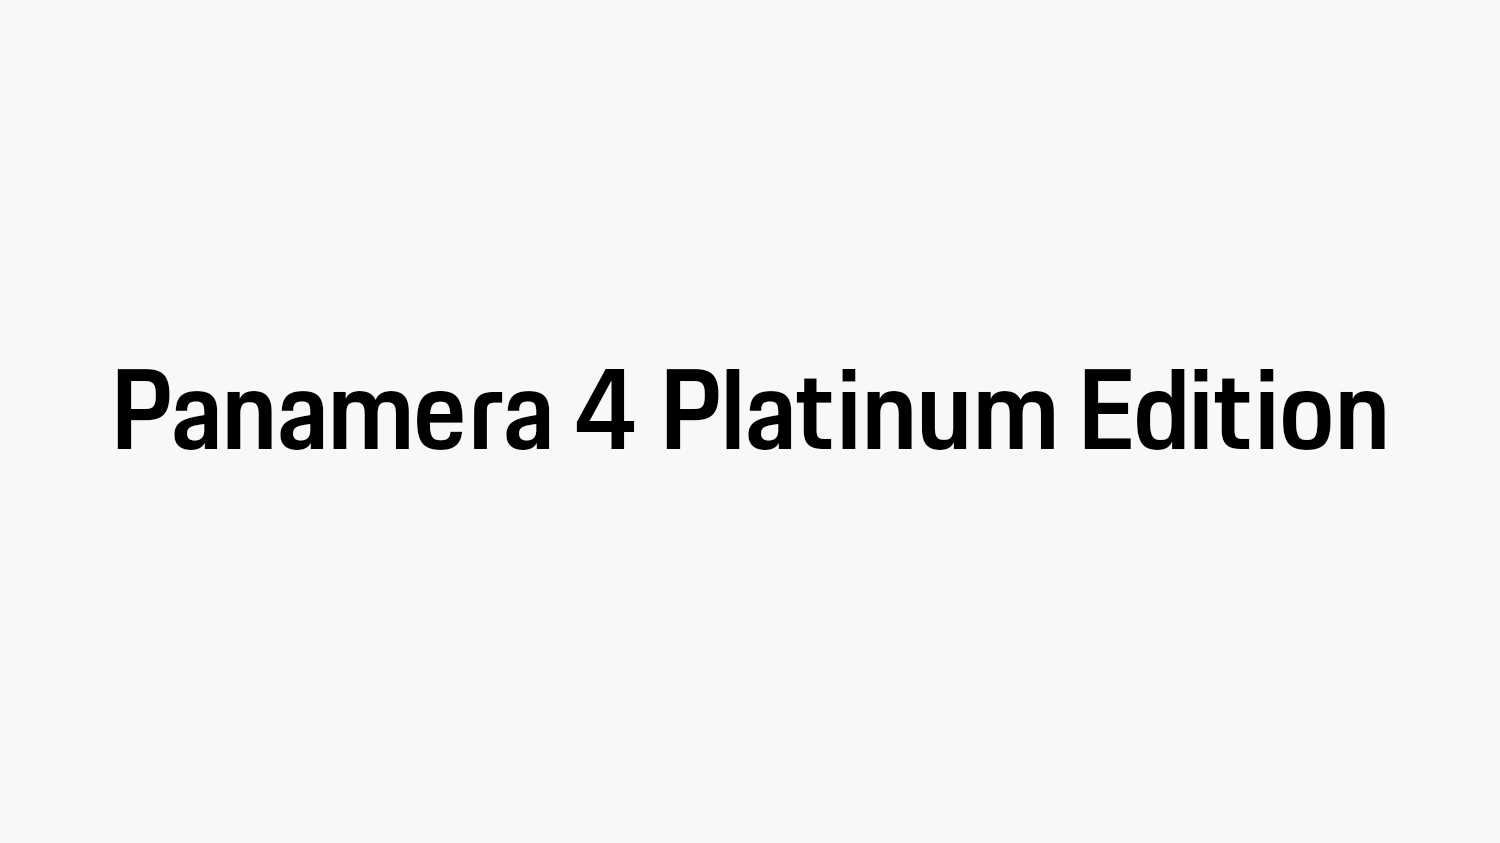 Panamera 4 Platinum Edition